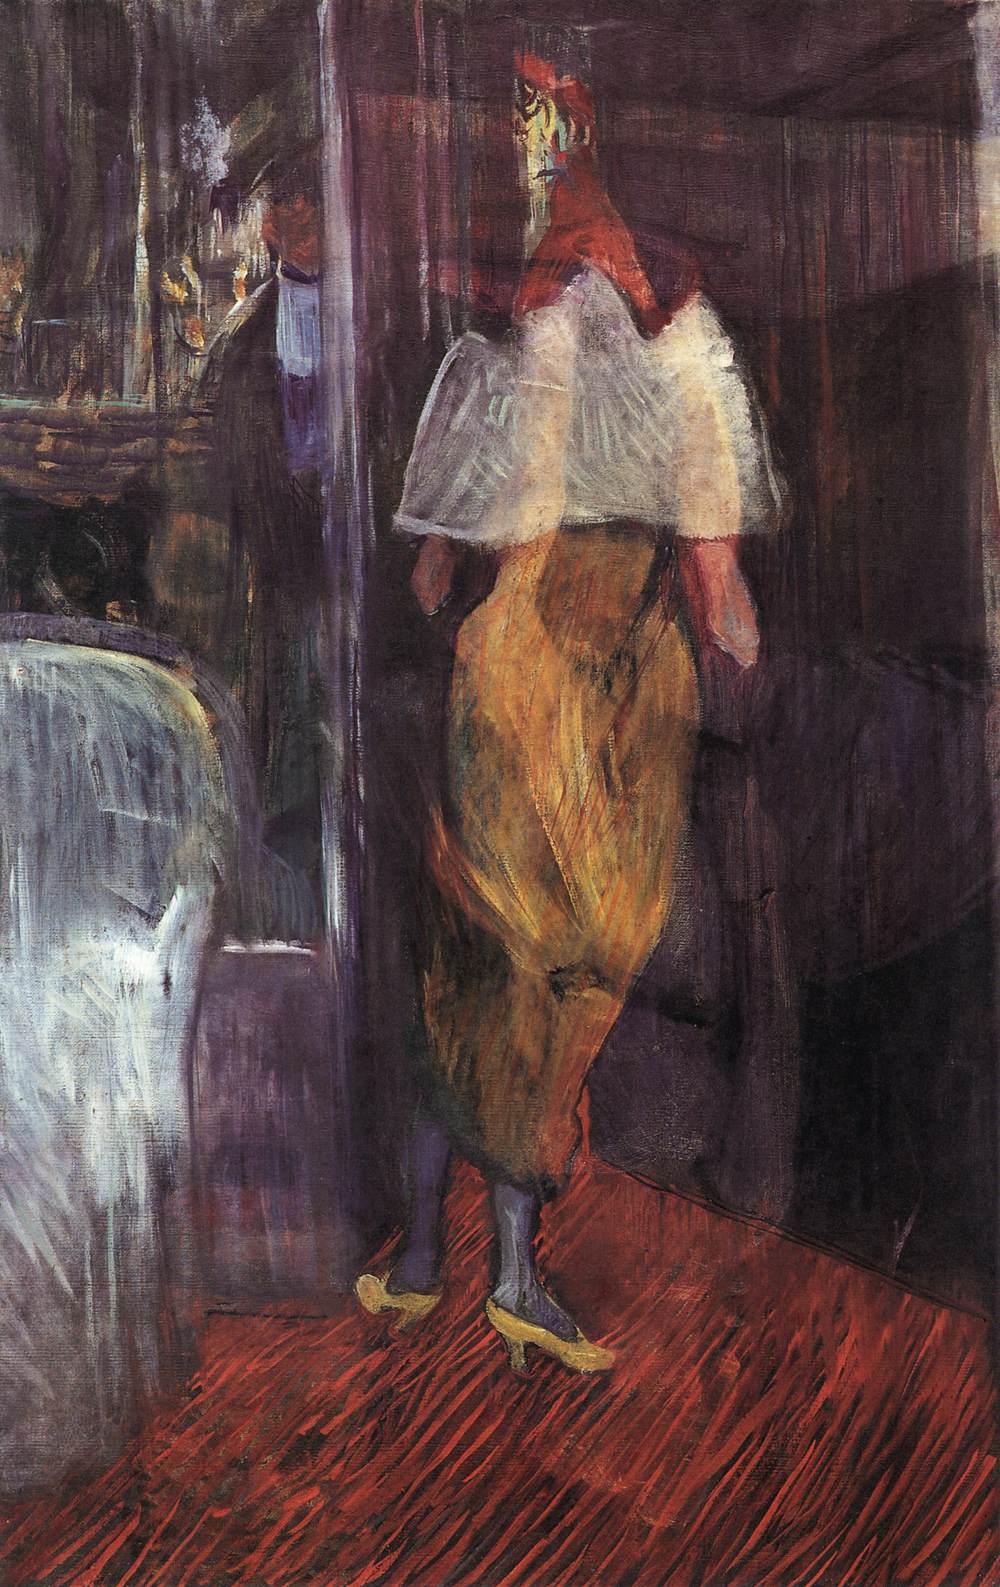 Henri+de+Toulouse+Lautrec-1864-1901 (26).jpg